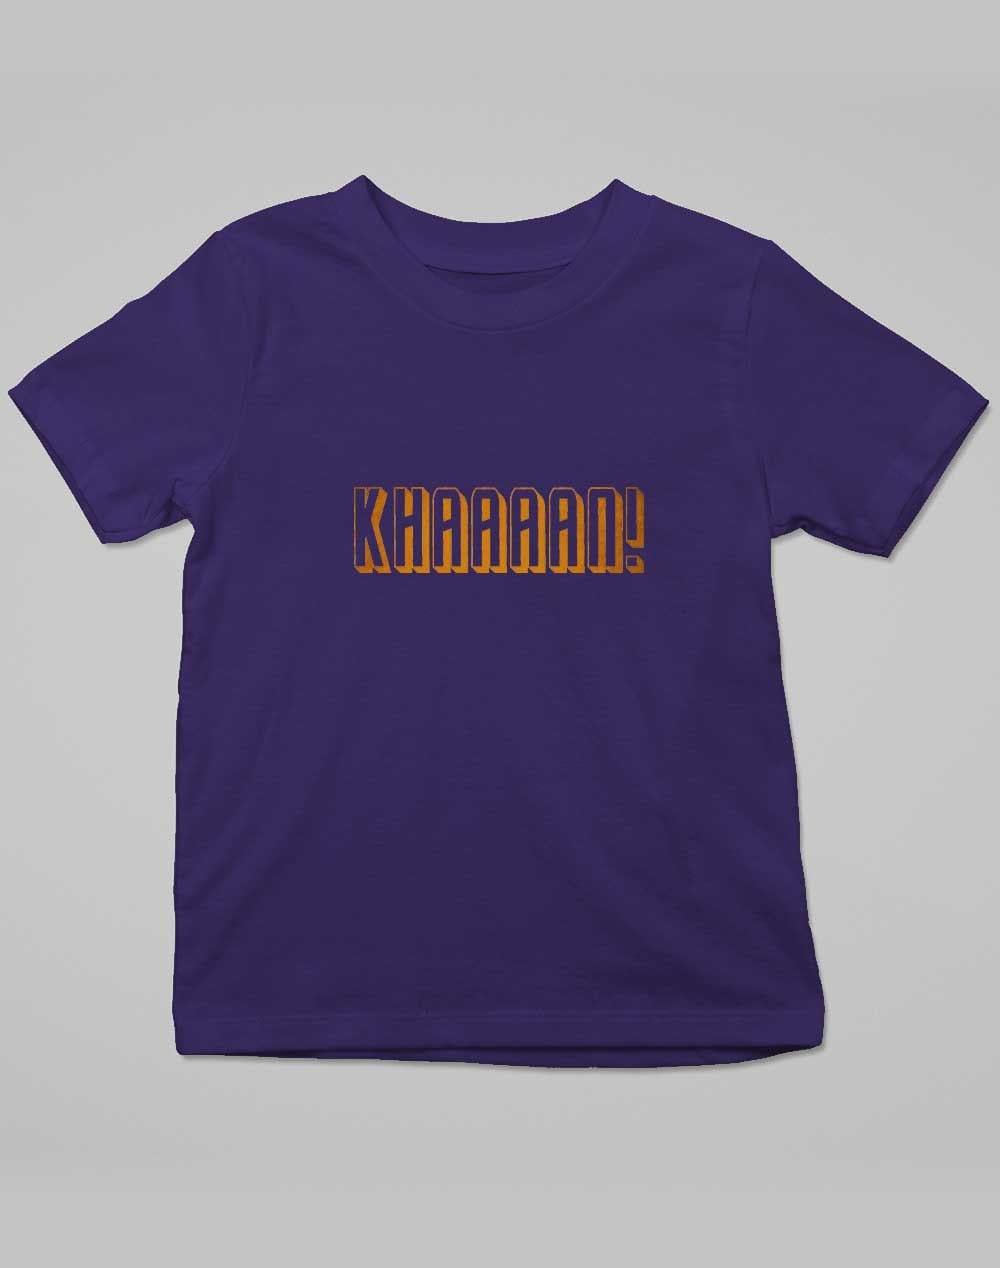 KHAAAAAN Kids T-Shirt 3-4 years / Navy  - Off World Tees